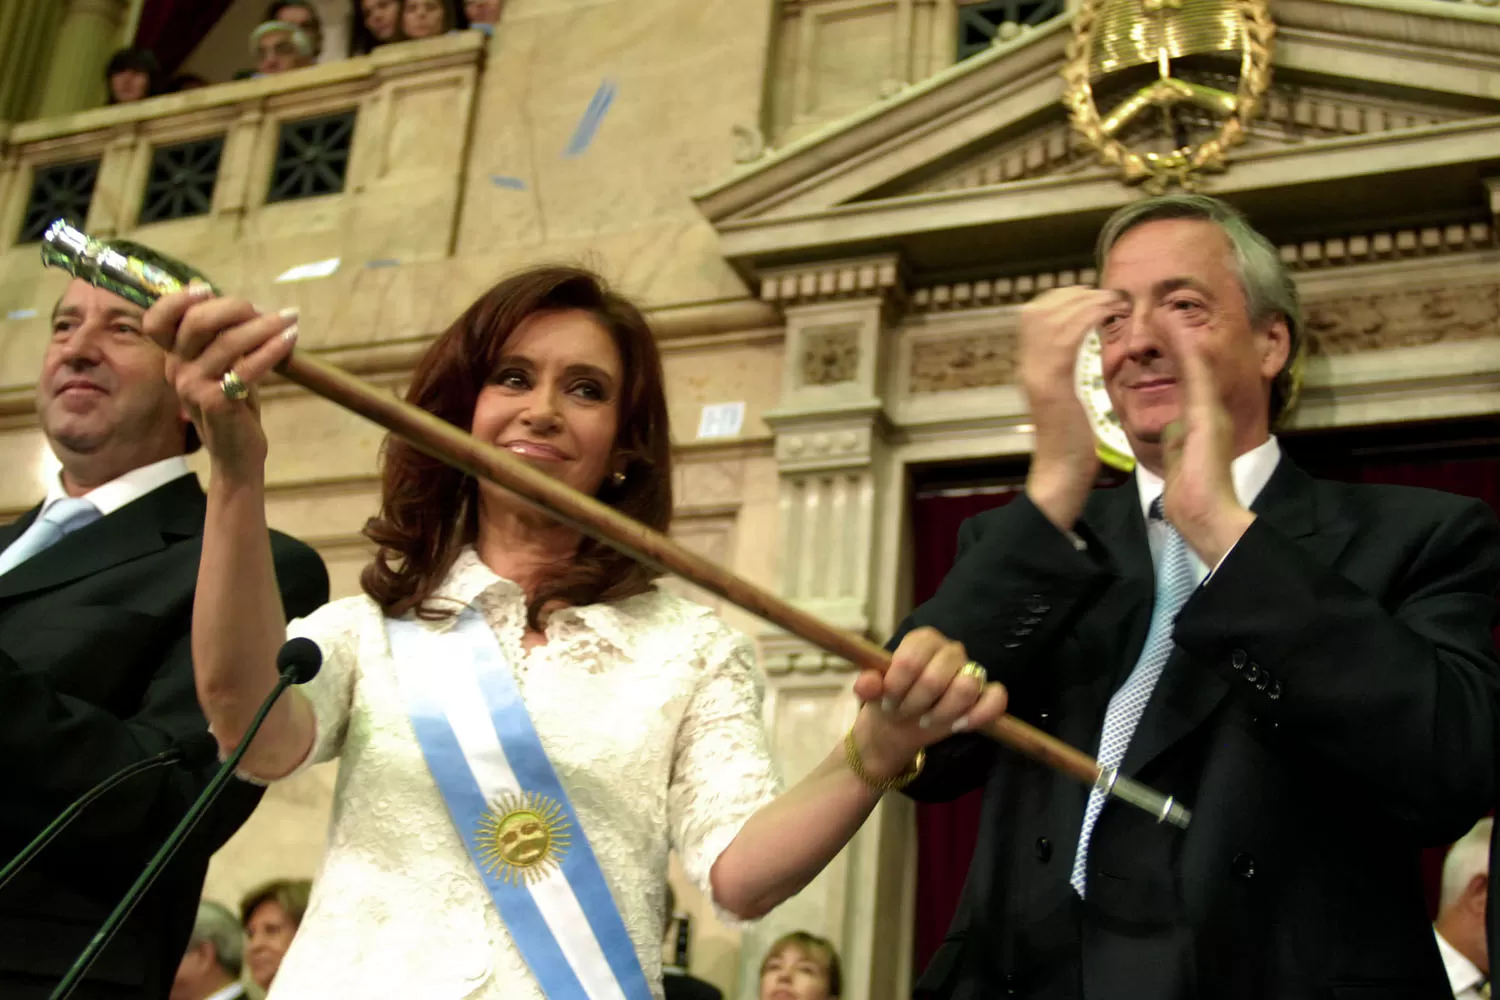 DENUNCIA. Cristina Kirchner aseguró que sacaron de su casa la bandas y bastones presidenciales del matrimonio